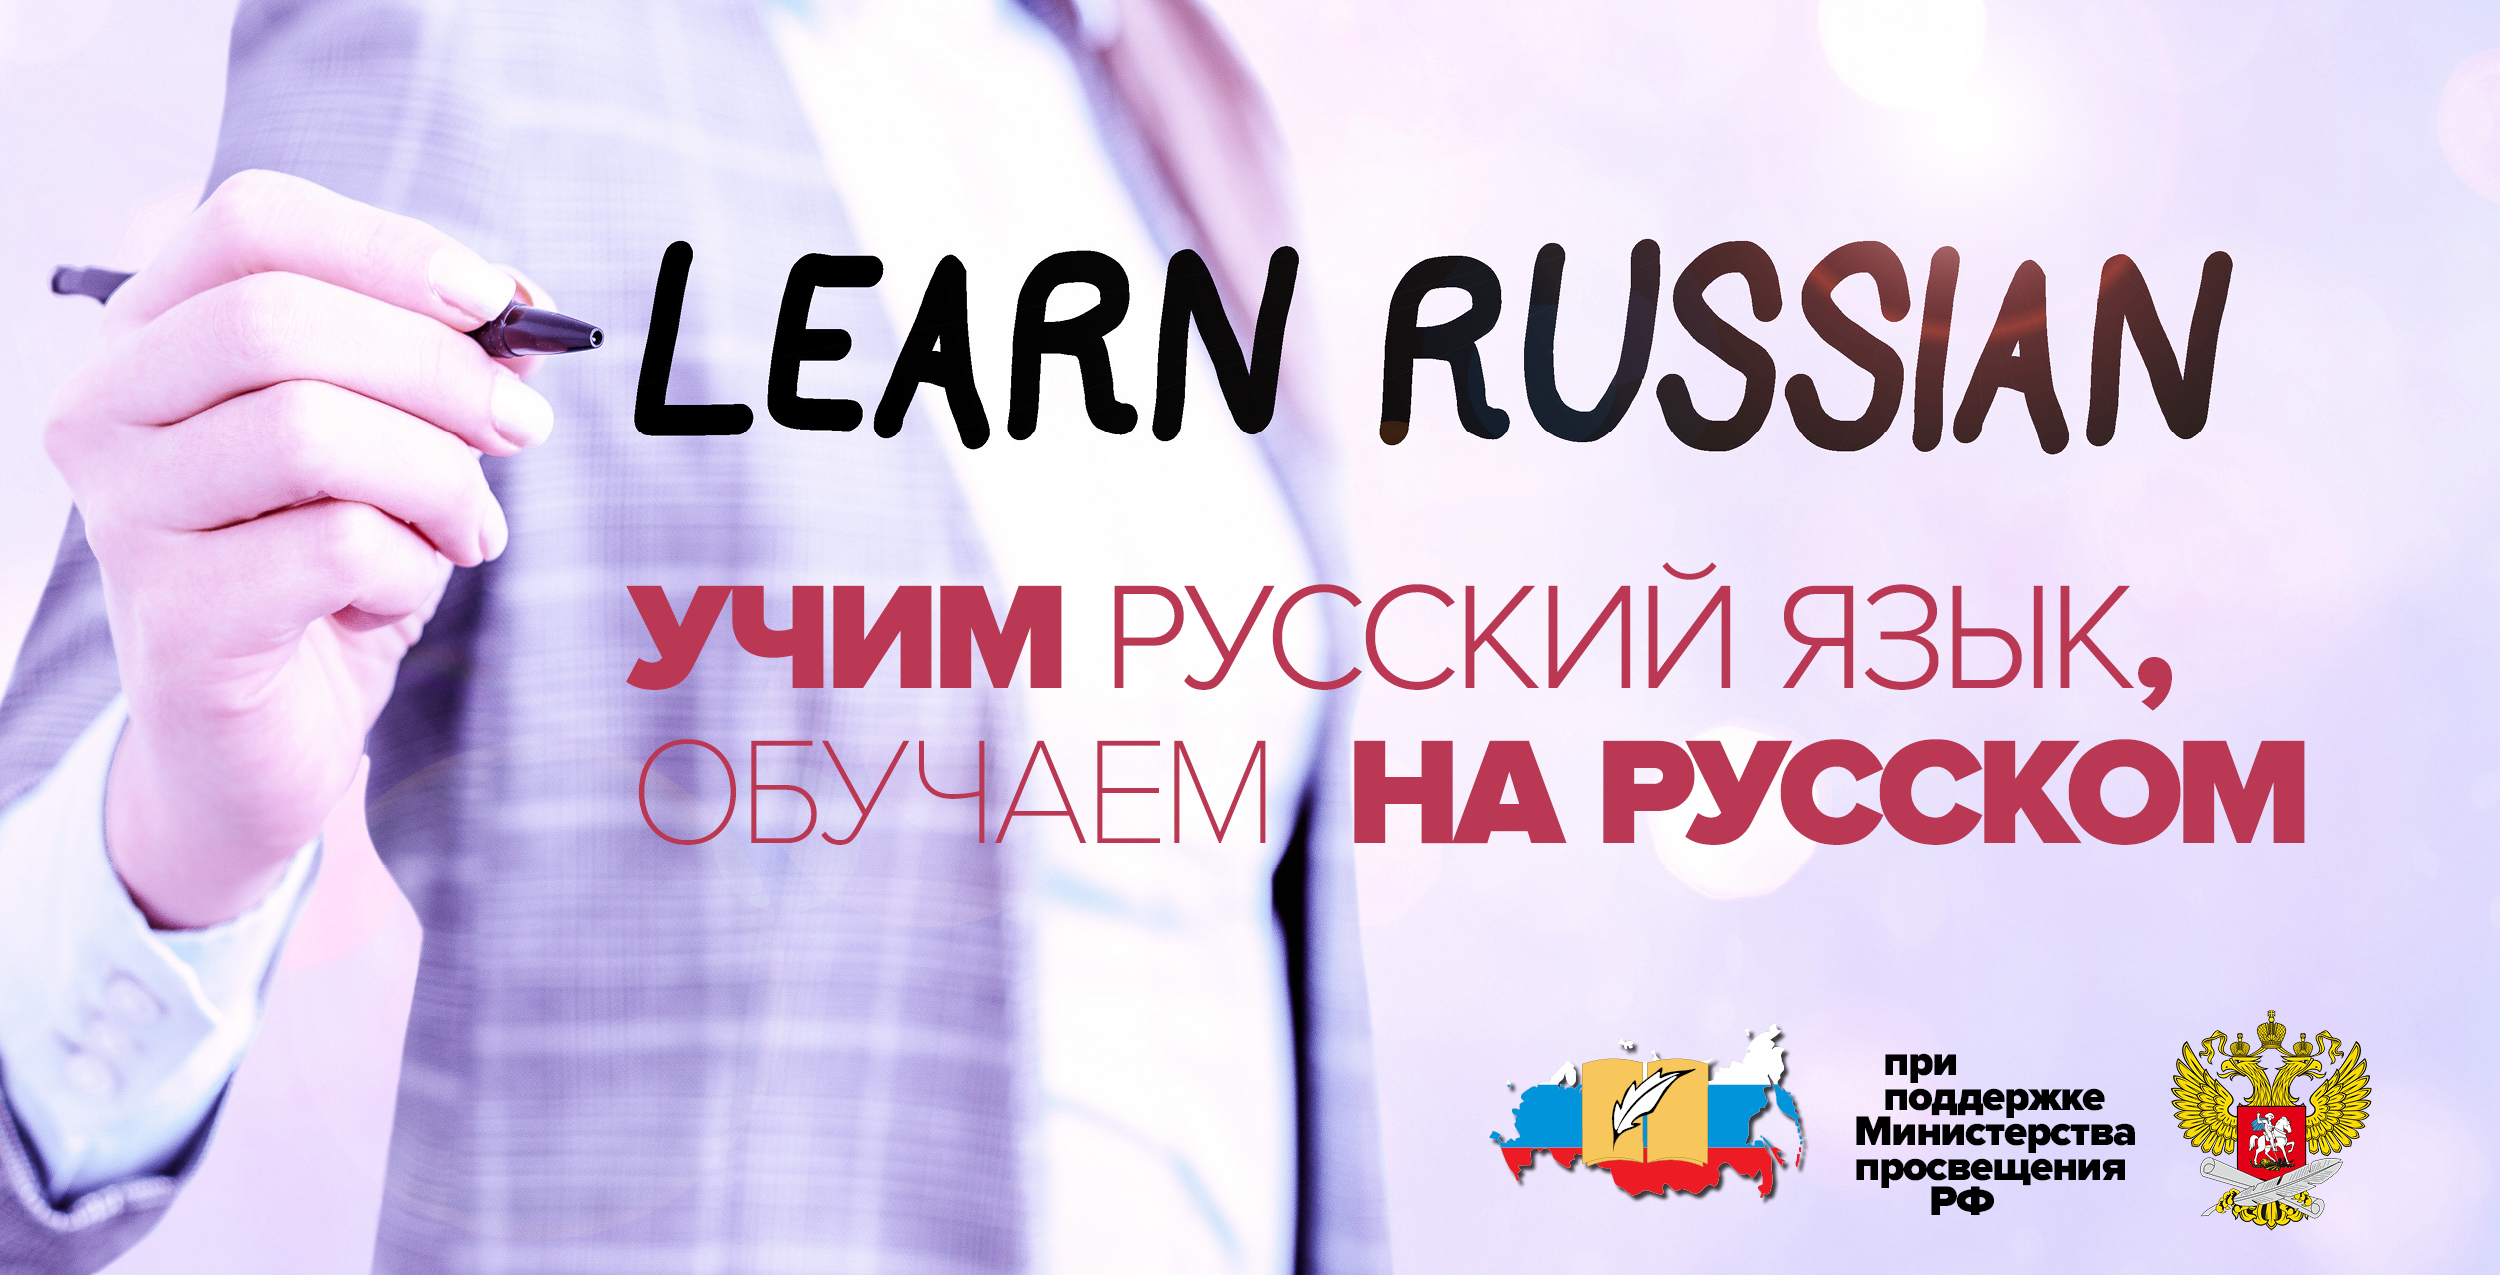 СПО «Учим русский язык, обучаем на русском»